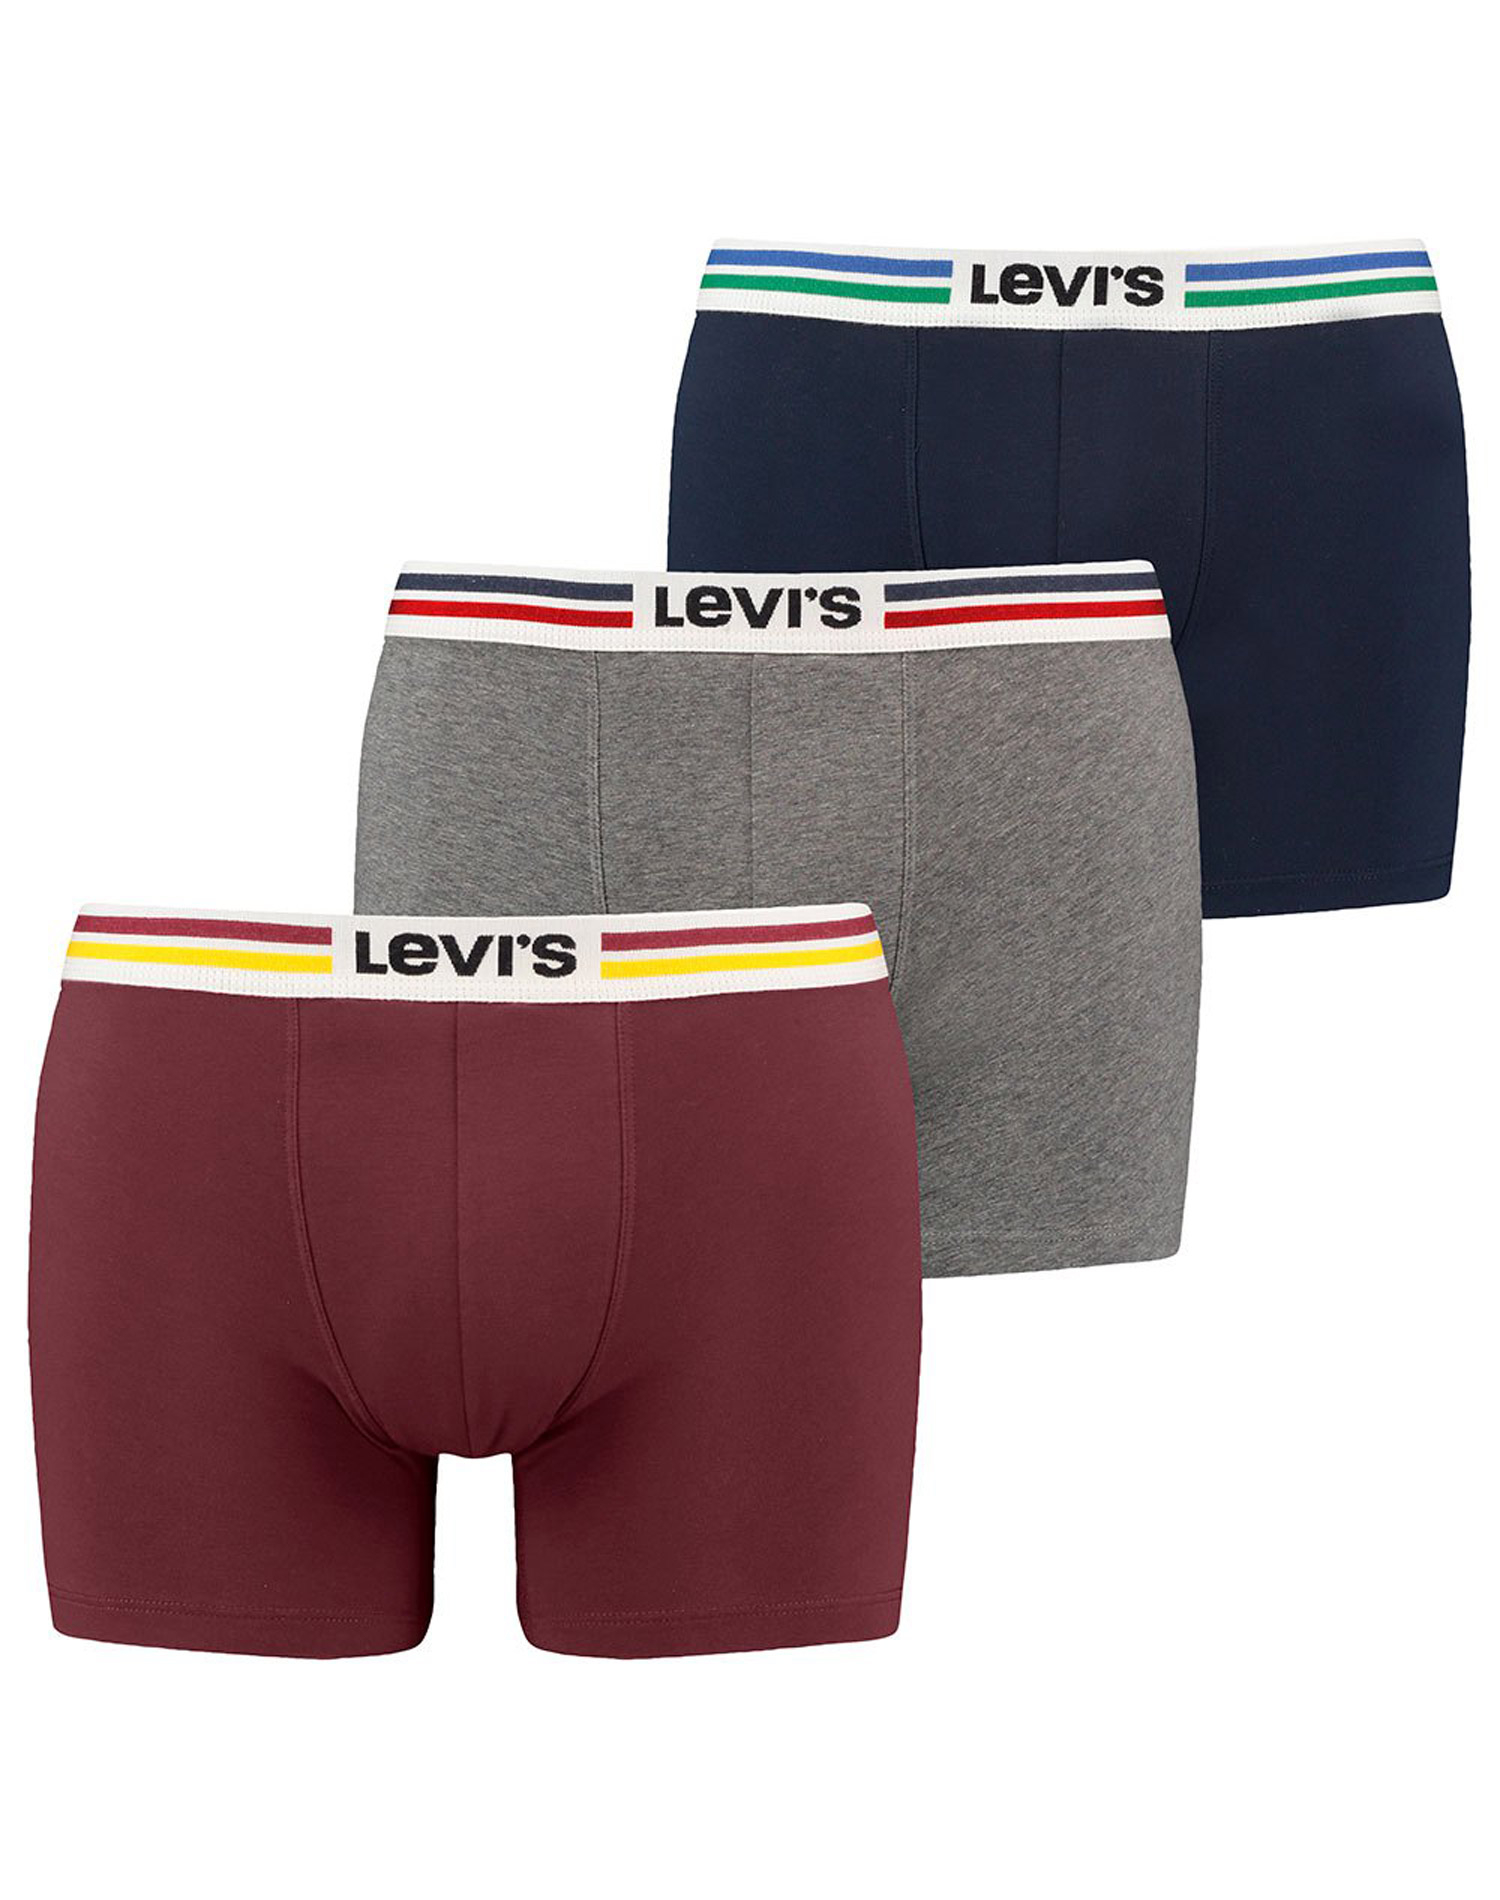 Levi's bòxer pack (3u) en caixa de regal 701221226001 de diferents colors